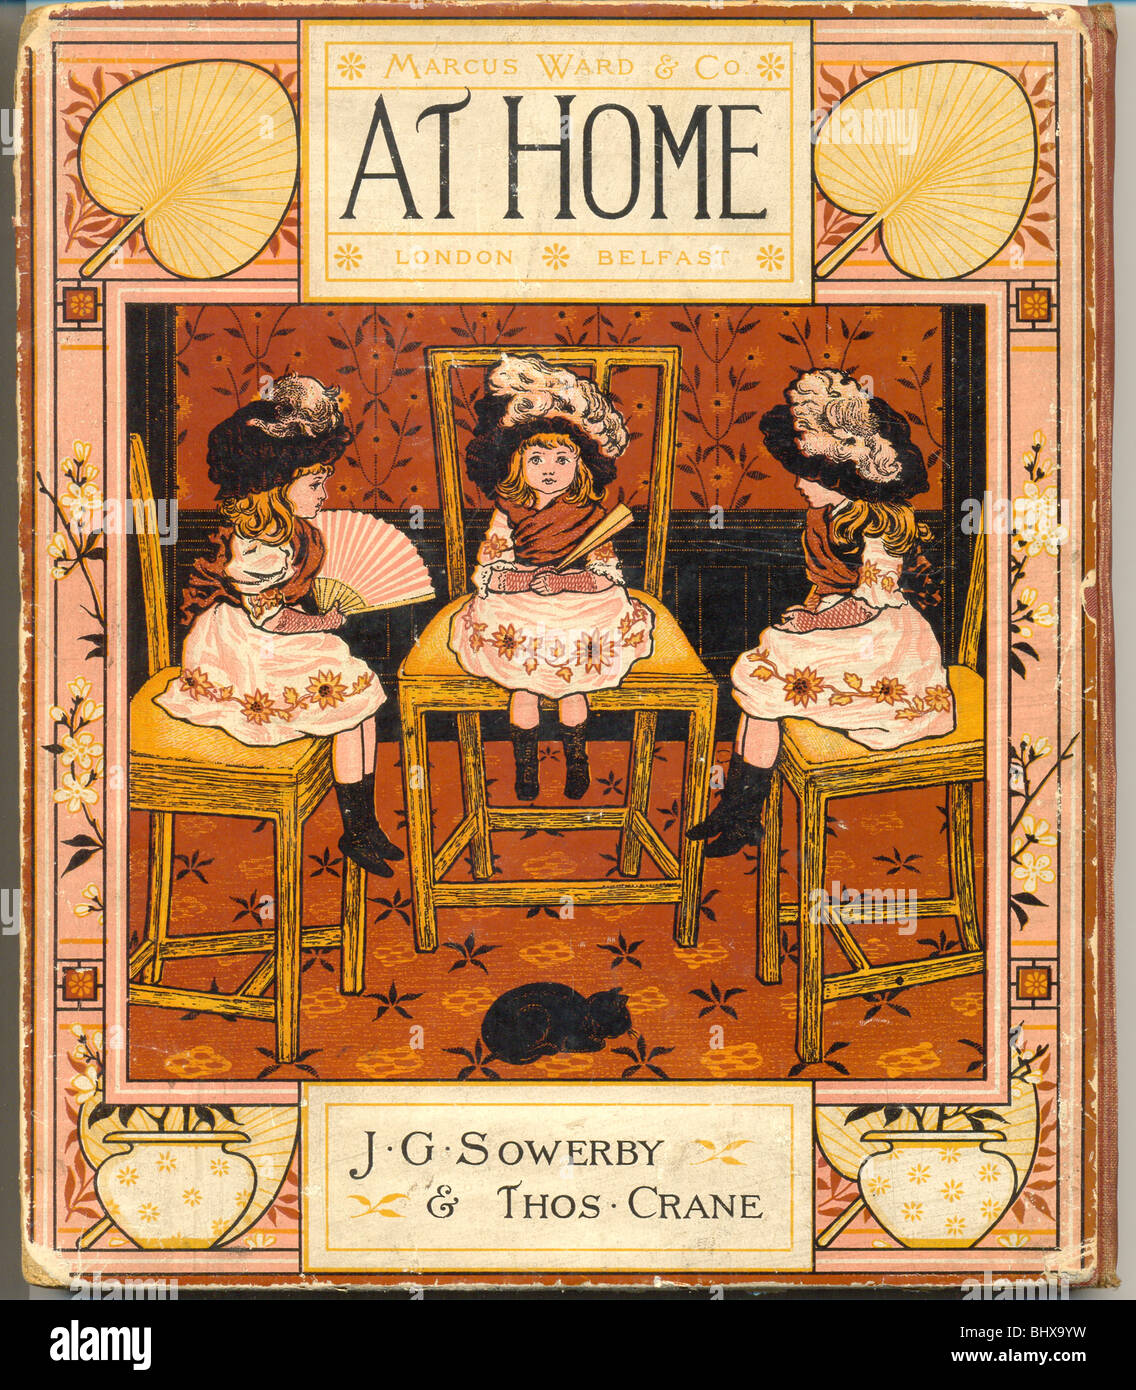 Buchcover für zu Hause von J G Sowerby und Thomas Crane von Marcus Ward veröffentlicht Stockfoto